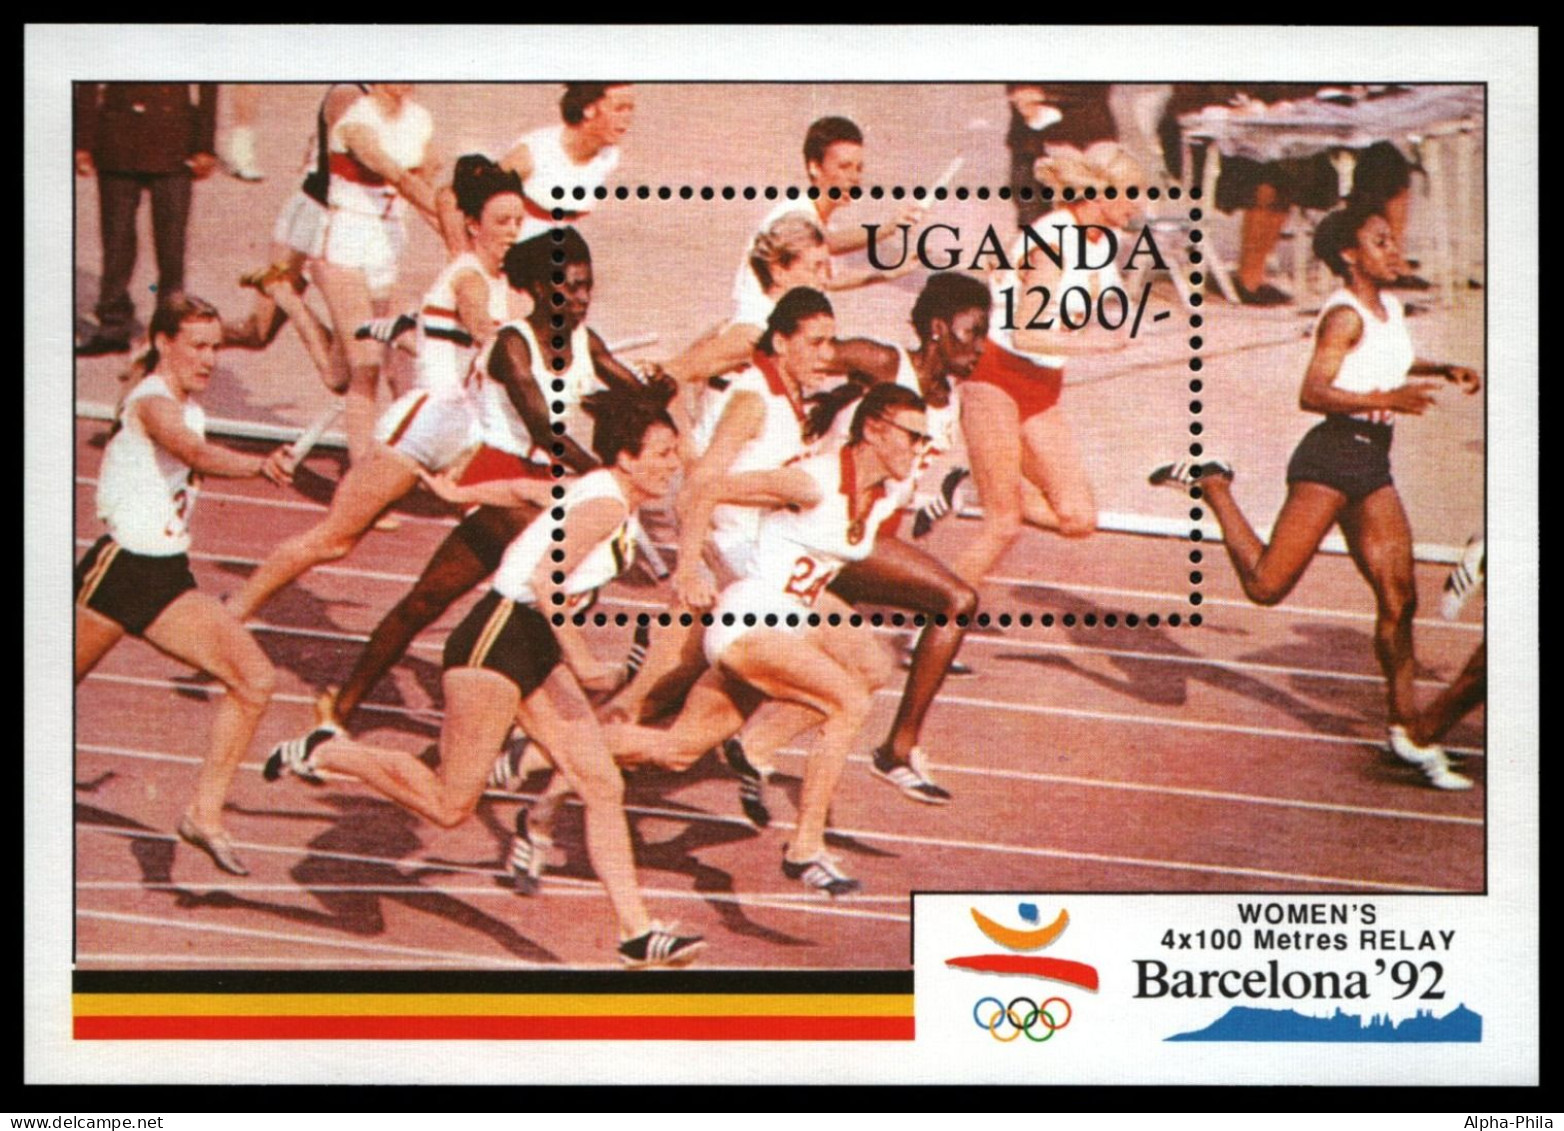 Uganda 1991 - Mi-Nr. Block 131 ** - MNH - Olympia Barcelona - Oeganda (1962-...)